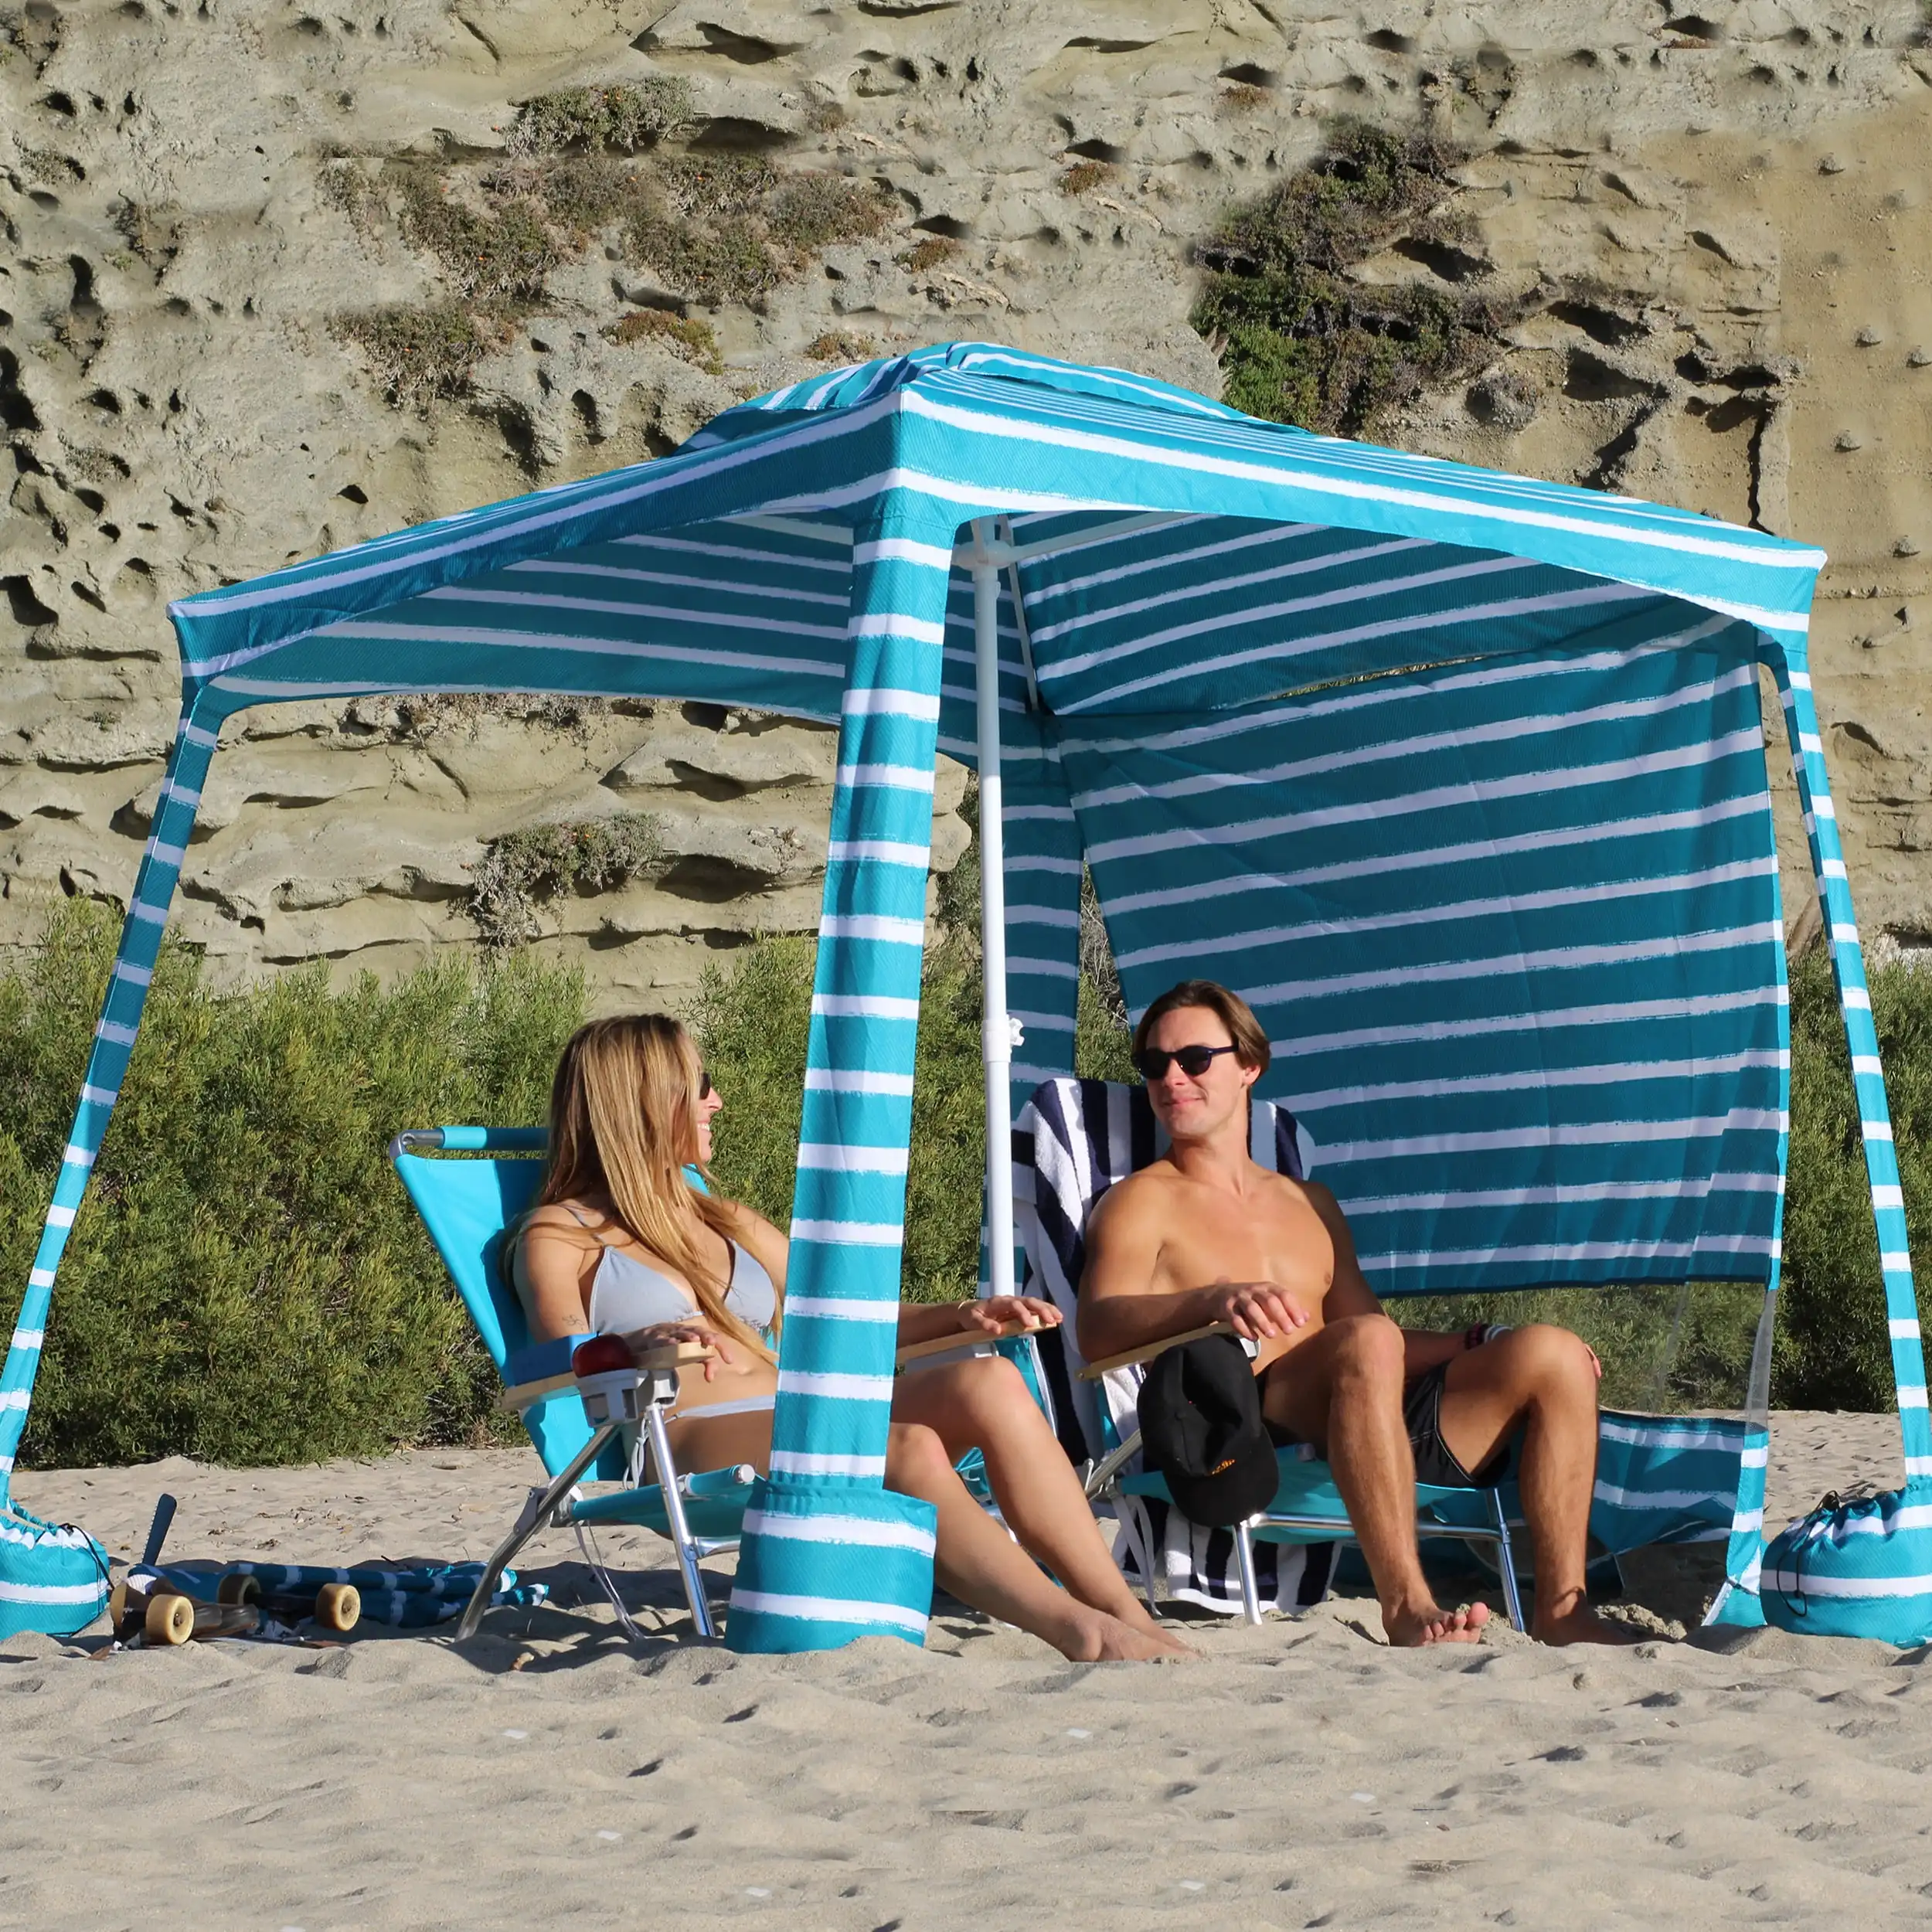 6.2ft * 6.2ft פסים ירוקים חוף האוהל מטריה חופה צל מקלט צלעות פלדה הוסר קיר החוף מגניב cabana עם כיסים חול